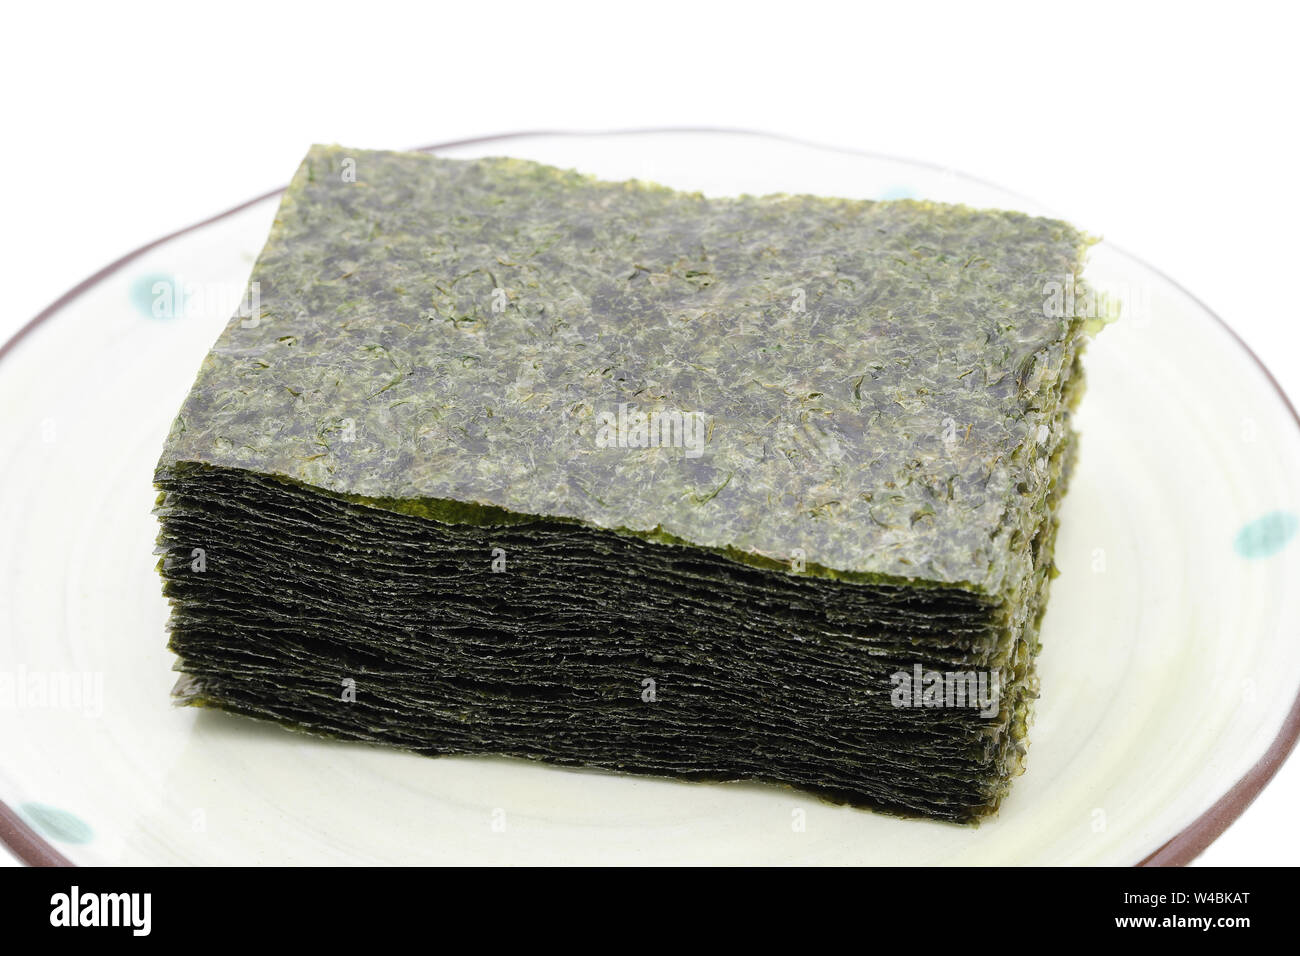 La nourriture japonaise, Nori feuilles d'algues sèches Banque D'Images